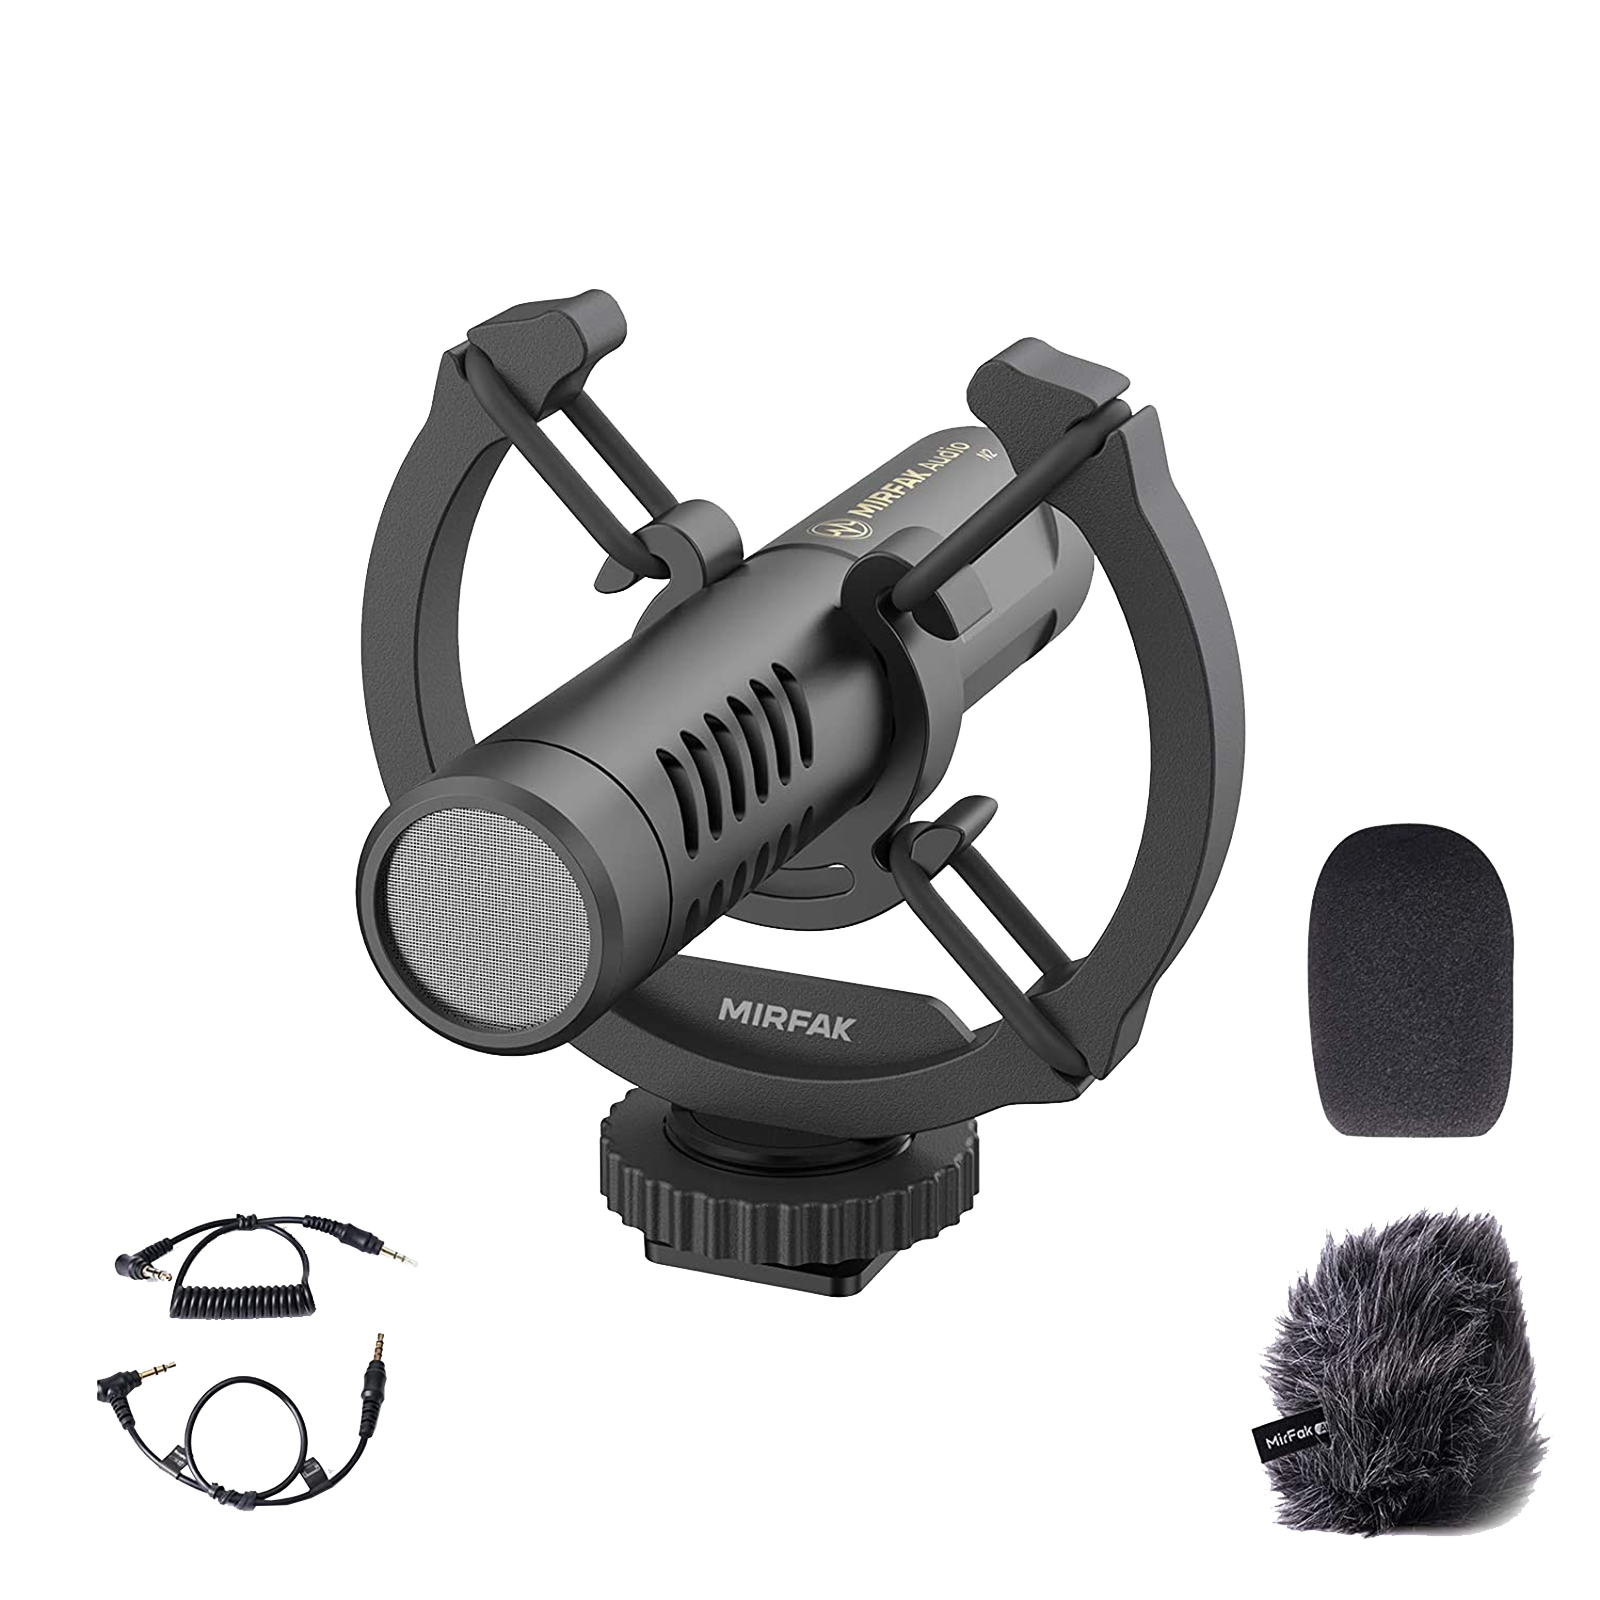 Mirfak Audio N2 Camera Mount Wireless Condenser Microphone (Cardioid Mode, Black)